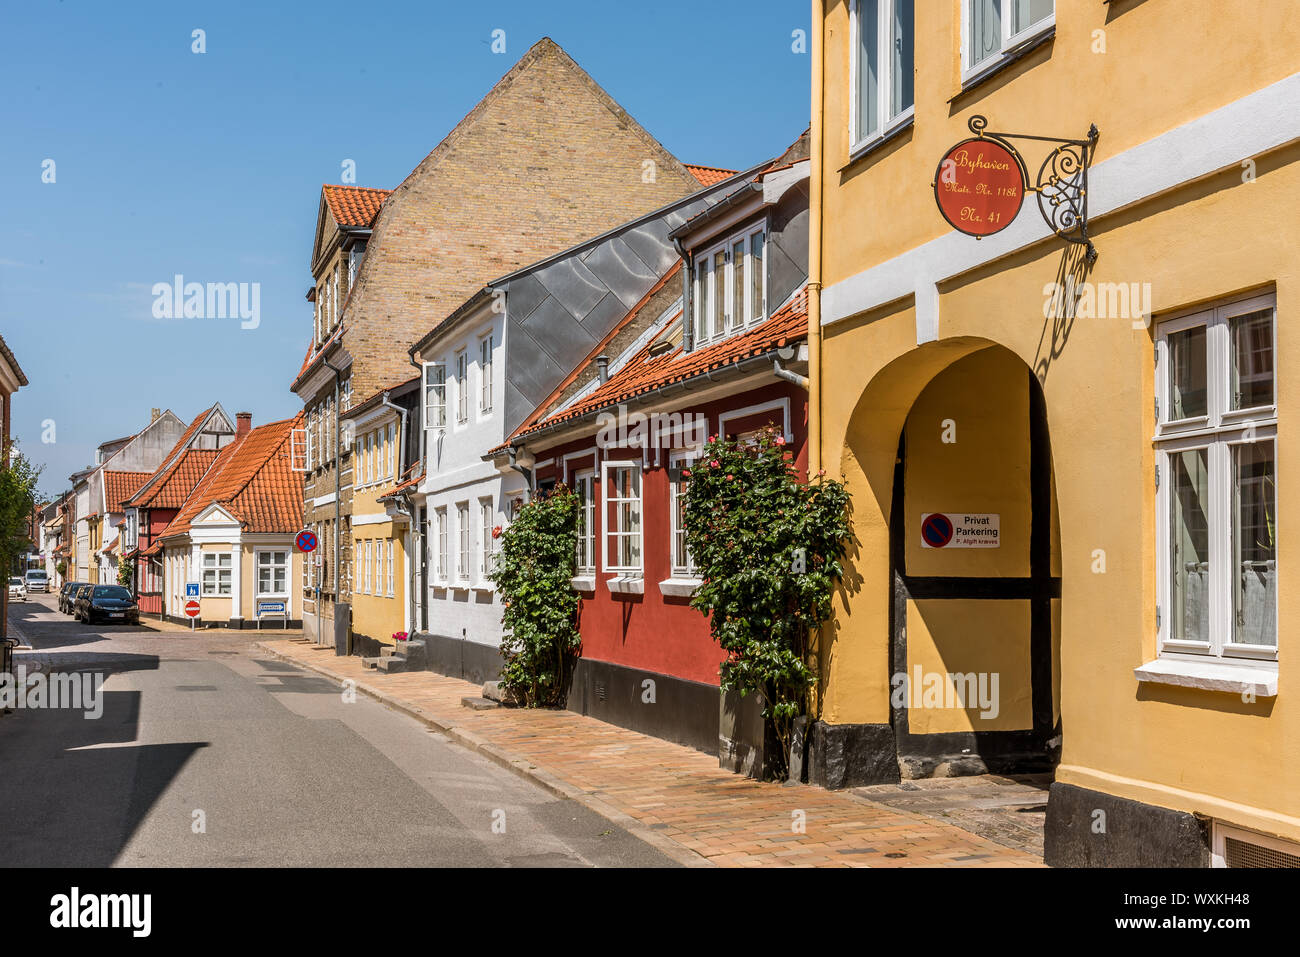 Malerische Straße in Faaborg mit alten Häusern und stockrosen auf dem Bürgersteig, Faaborg, Dänemark, 12. Juli 2019 Stockfoto